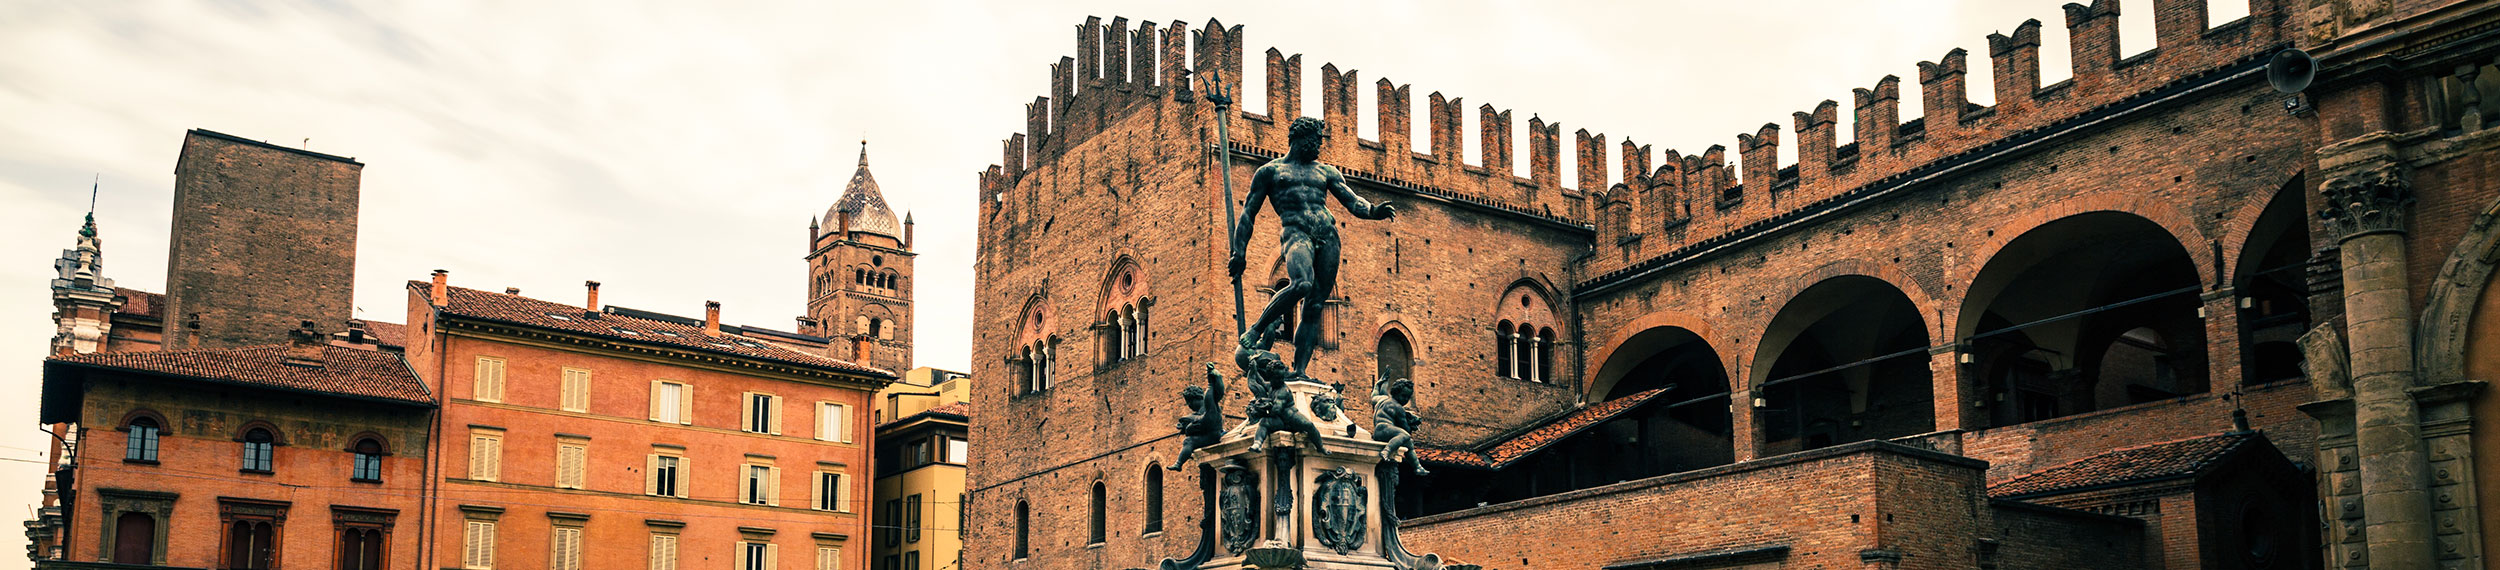 The Fountain of Neptune located in the square of Piazza del Nettuno in Bologna, Italy. 